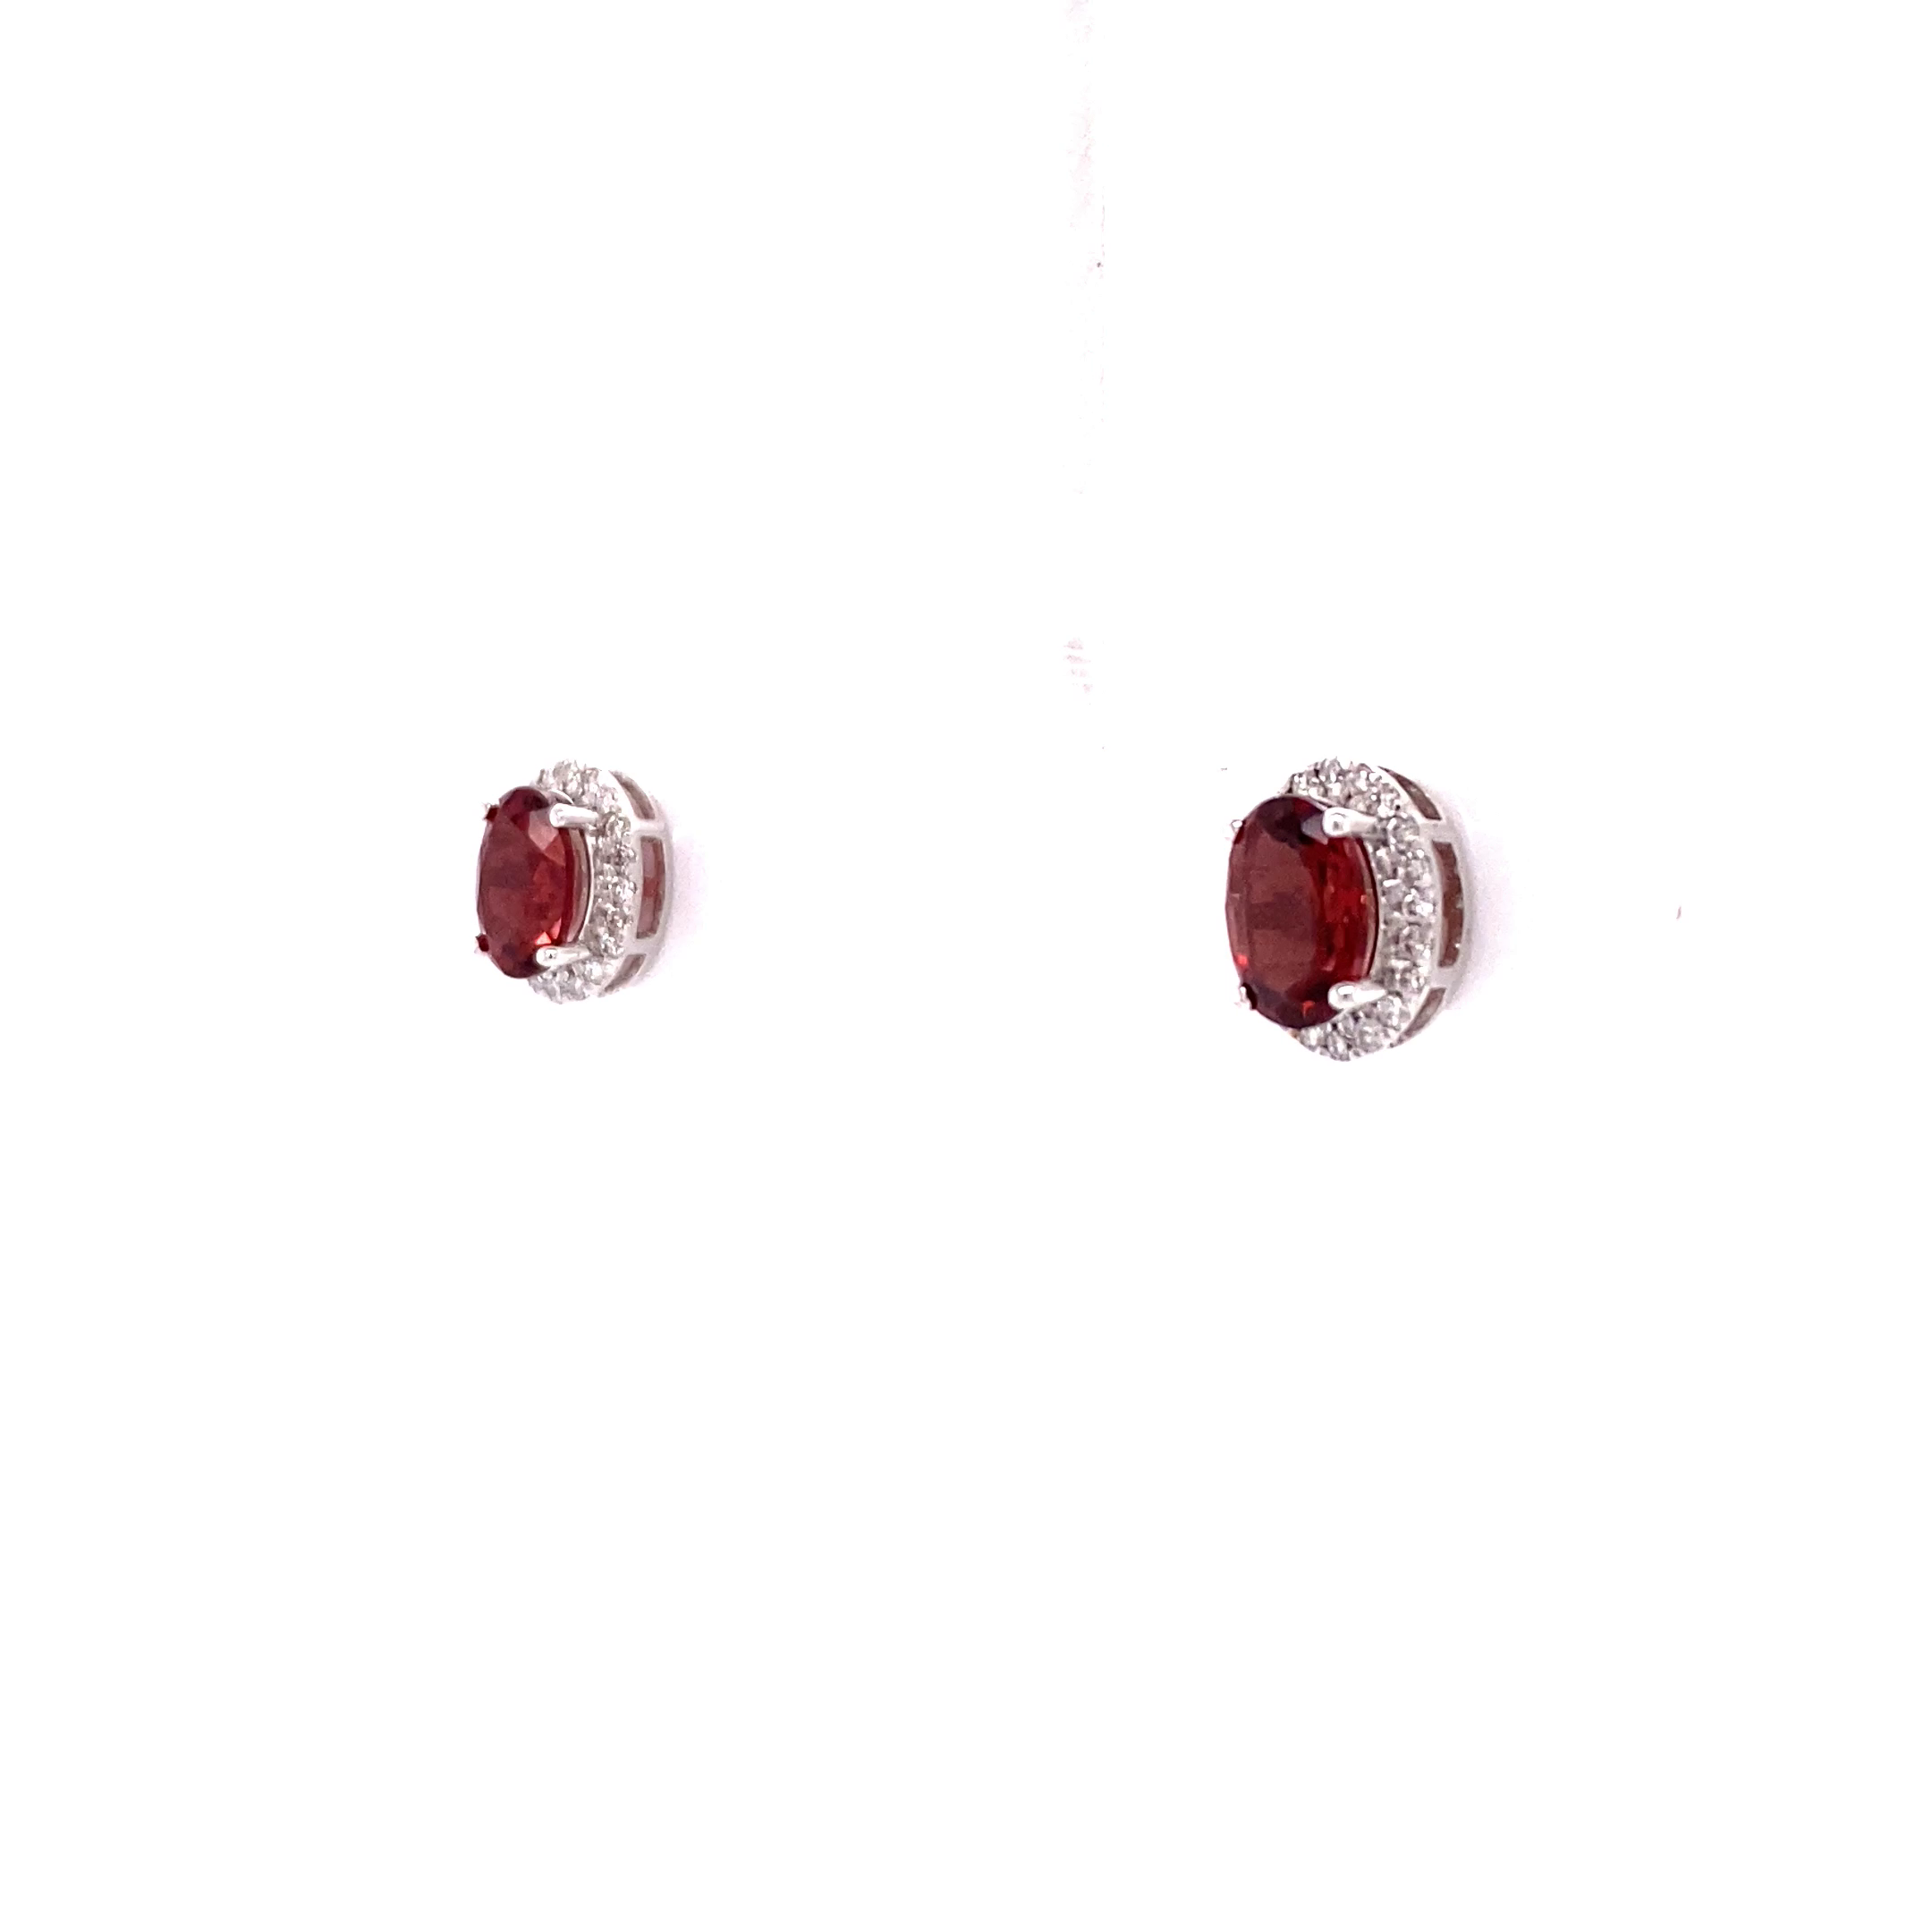 14KW Oval Garnet And Diamond Halo Stud earrings (Under $1k)